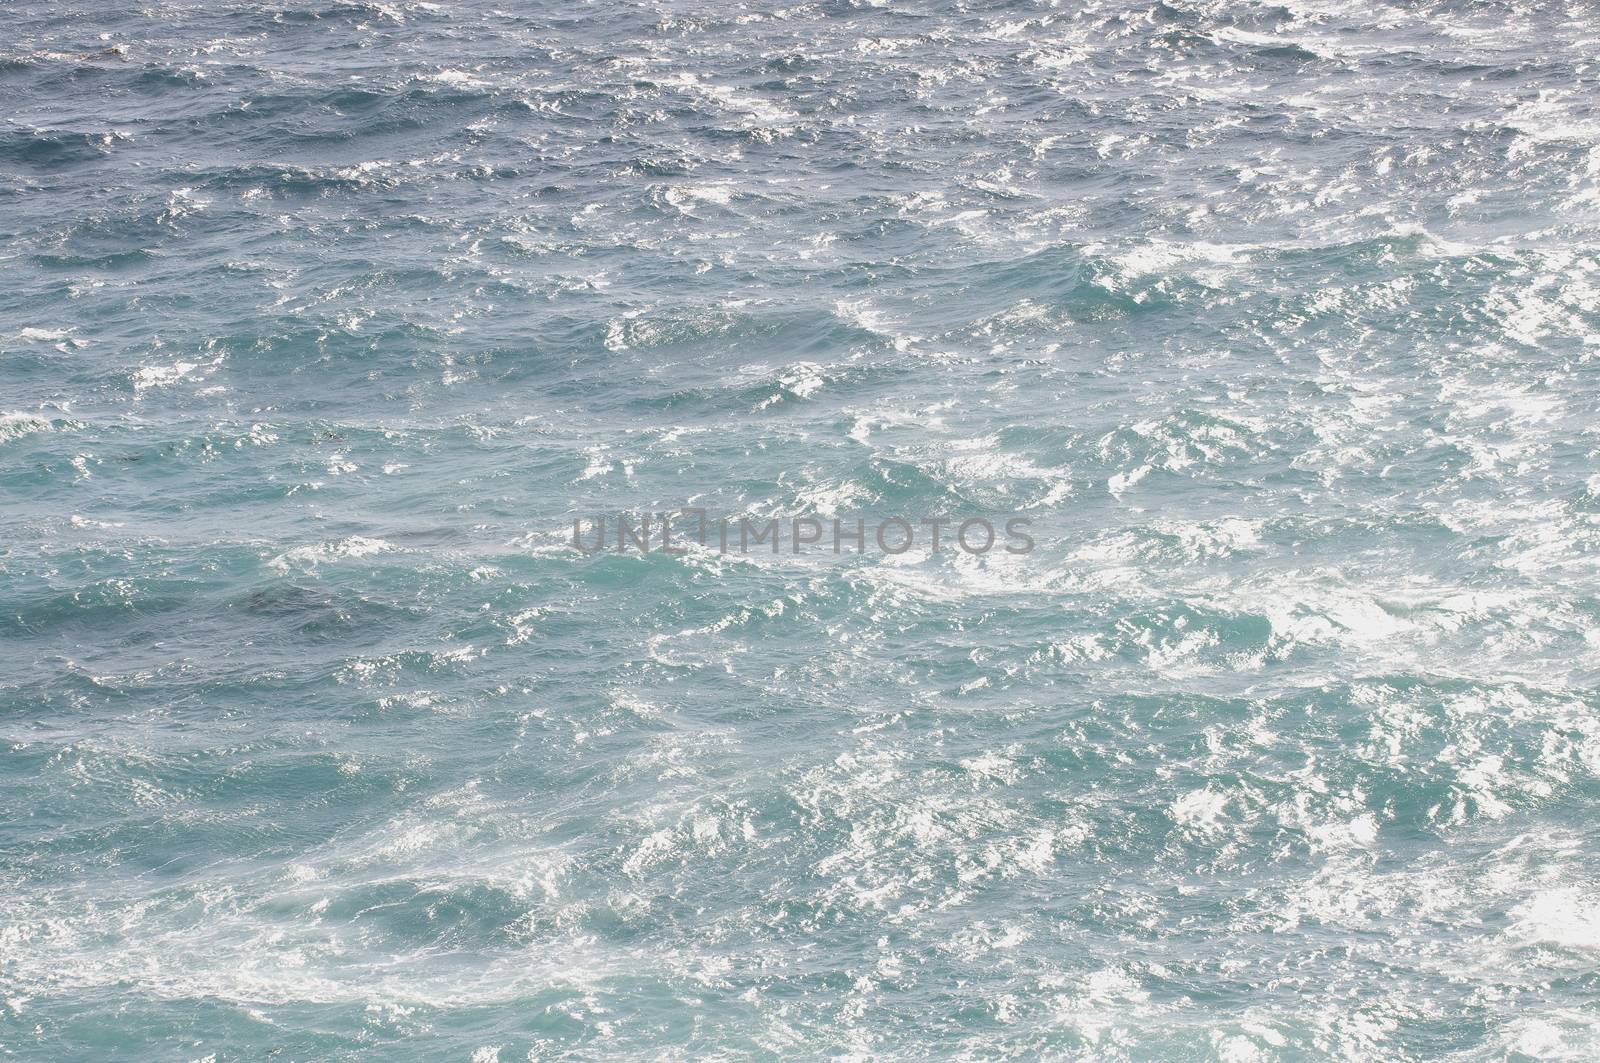 Ocean water by Njean